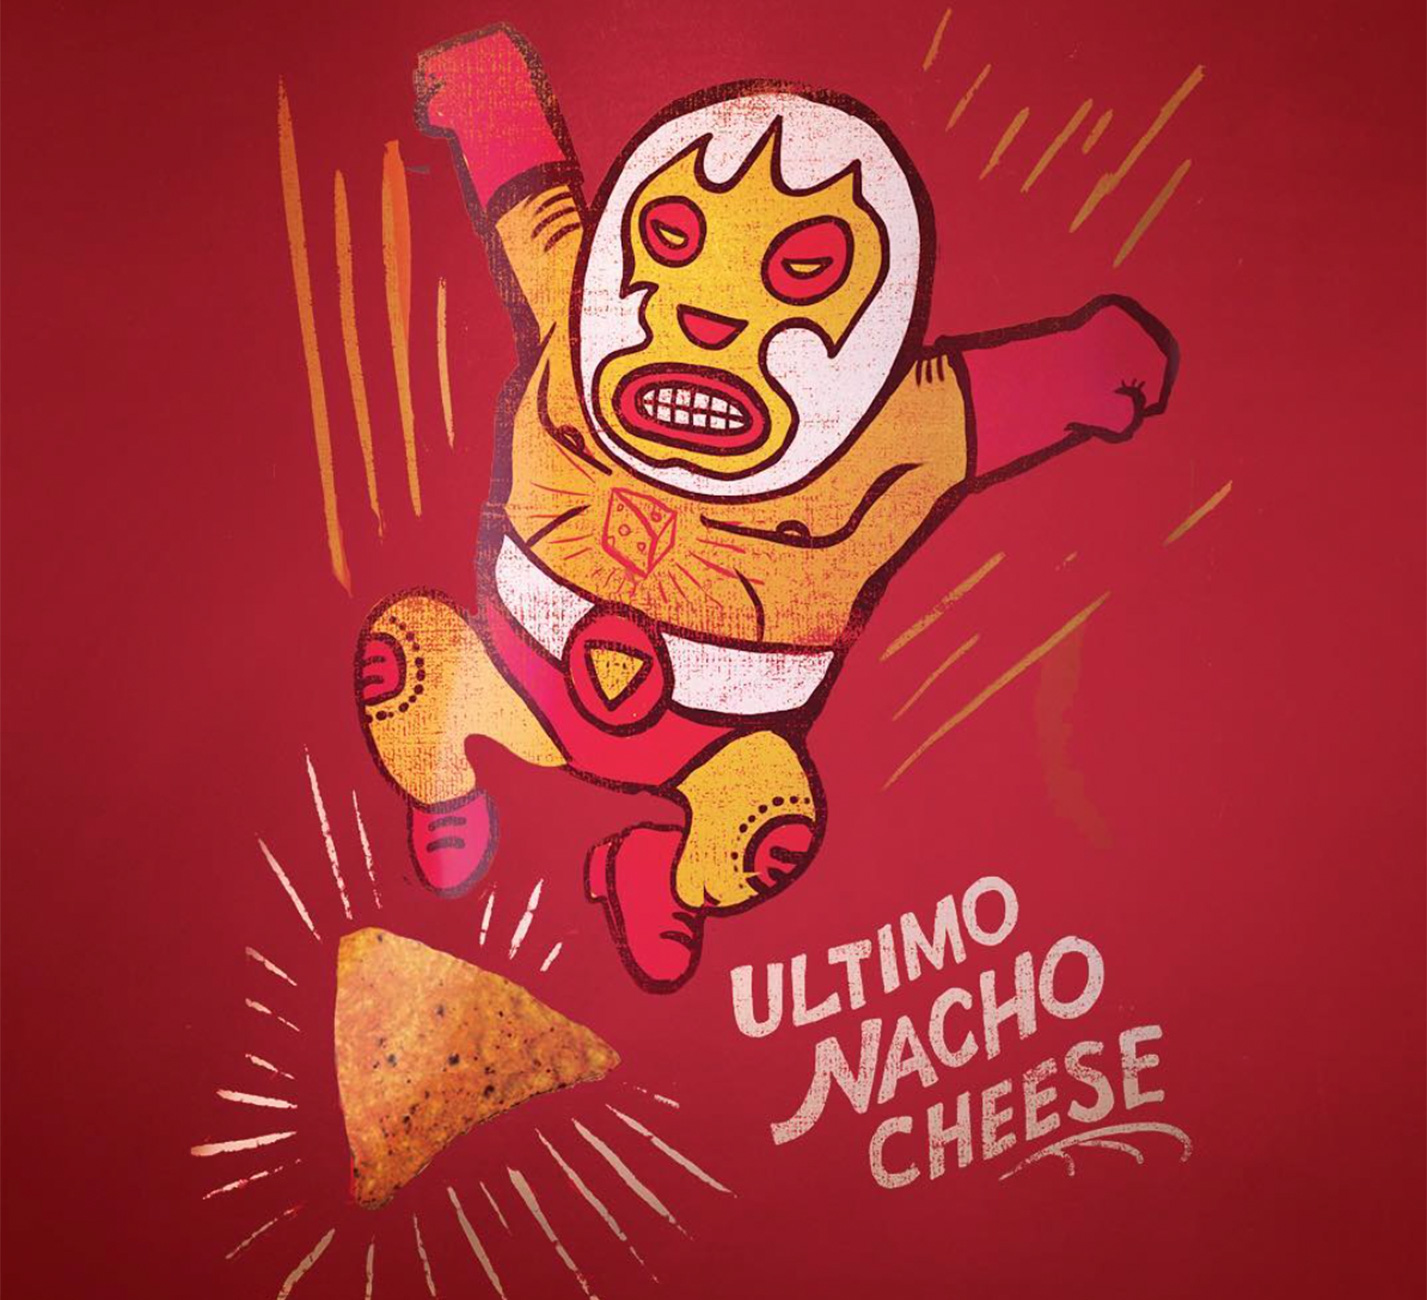 Ultimo nacho cheese wrestler cartoon